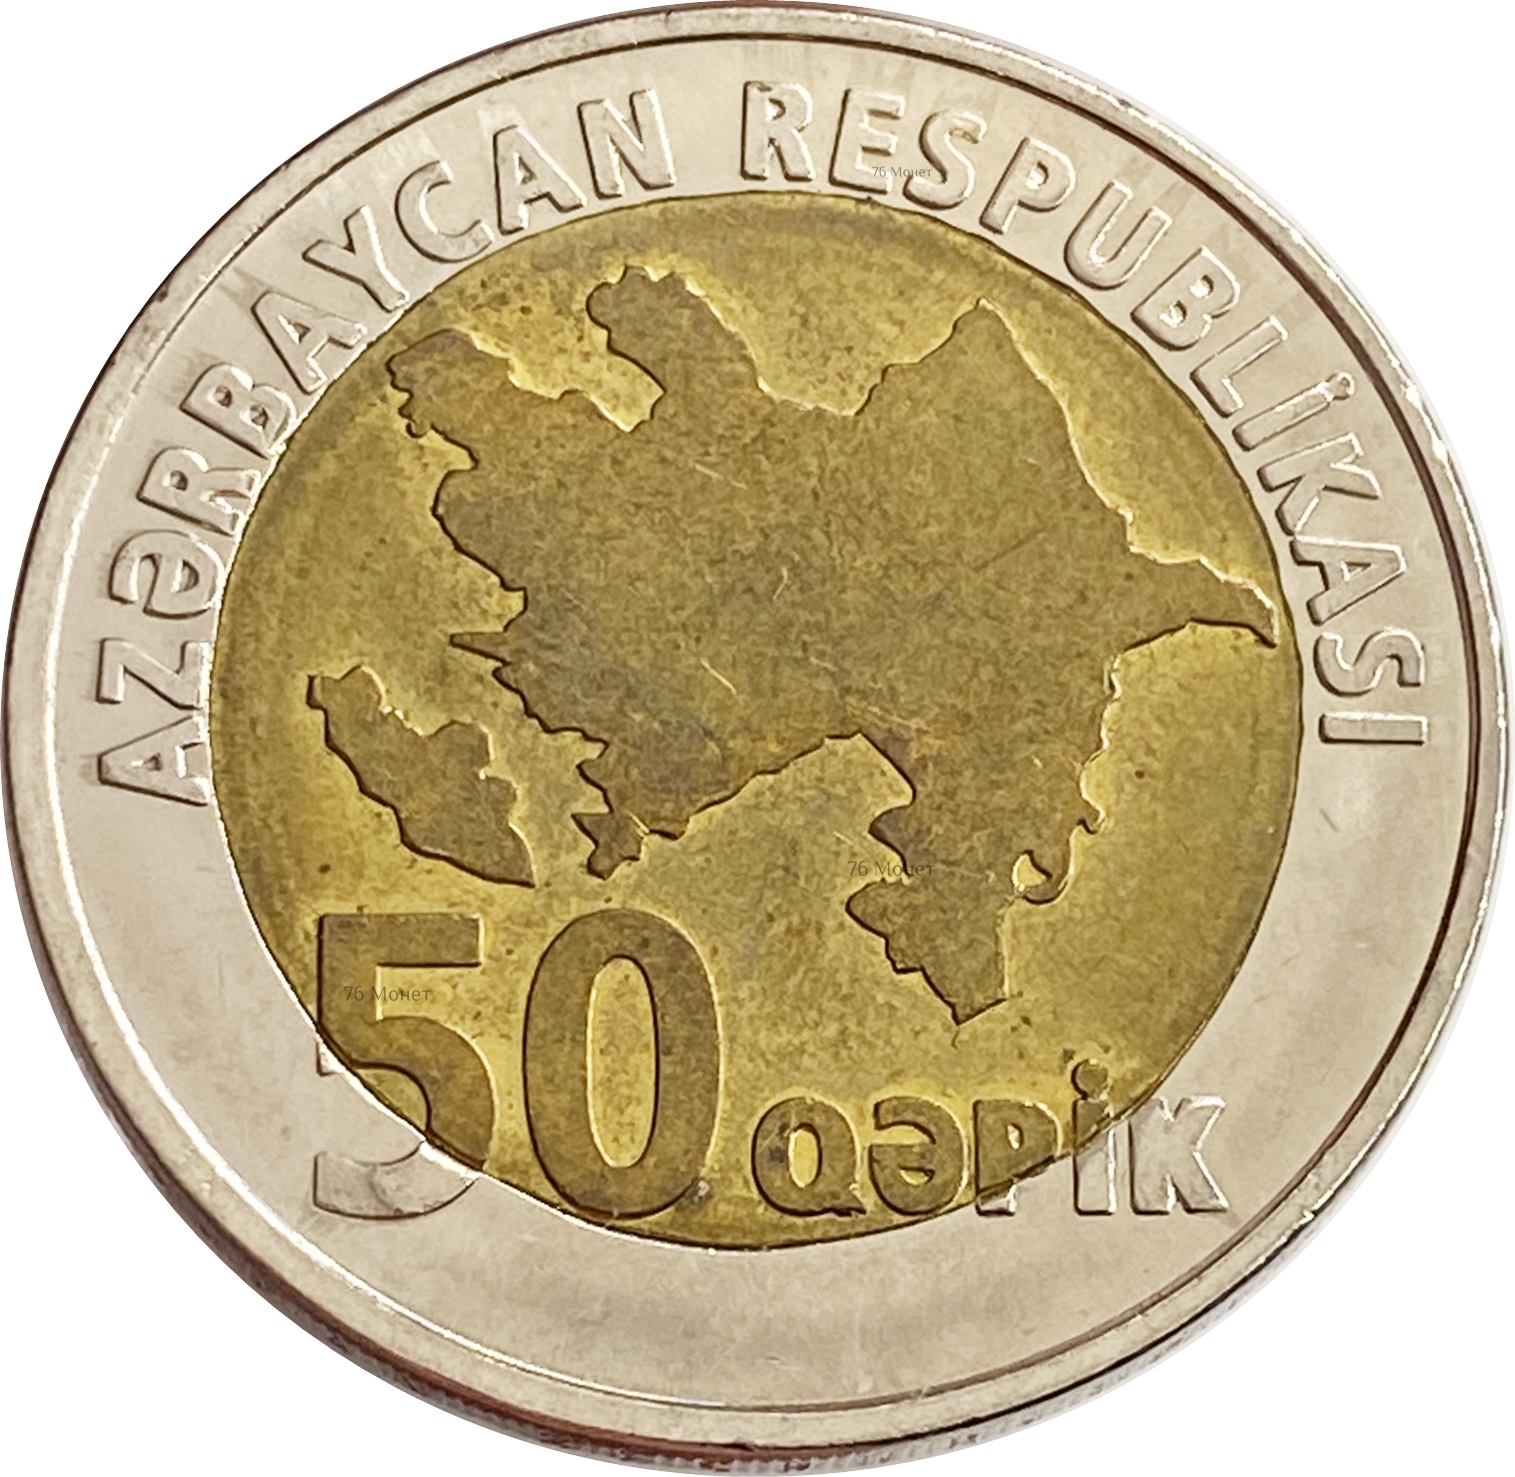 Азербайджанские монеты. Монета 50 гяпиков Азербайджан. Азербайджанские монеты 10 Qepik. Азербайджанский гяпик монеты. Азербайджанские монеты 5 Qepik.